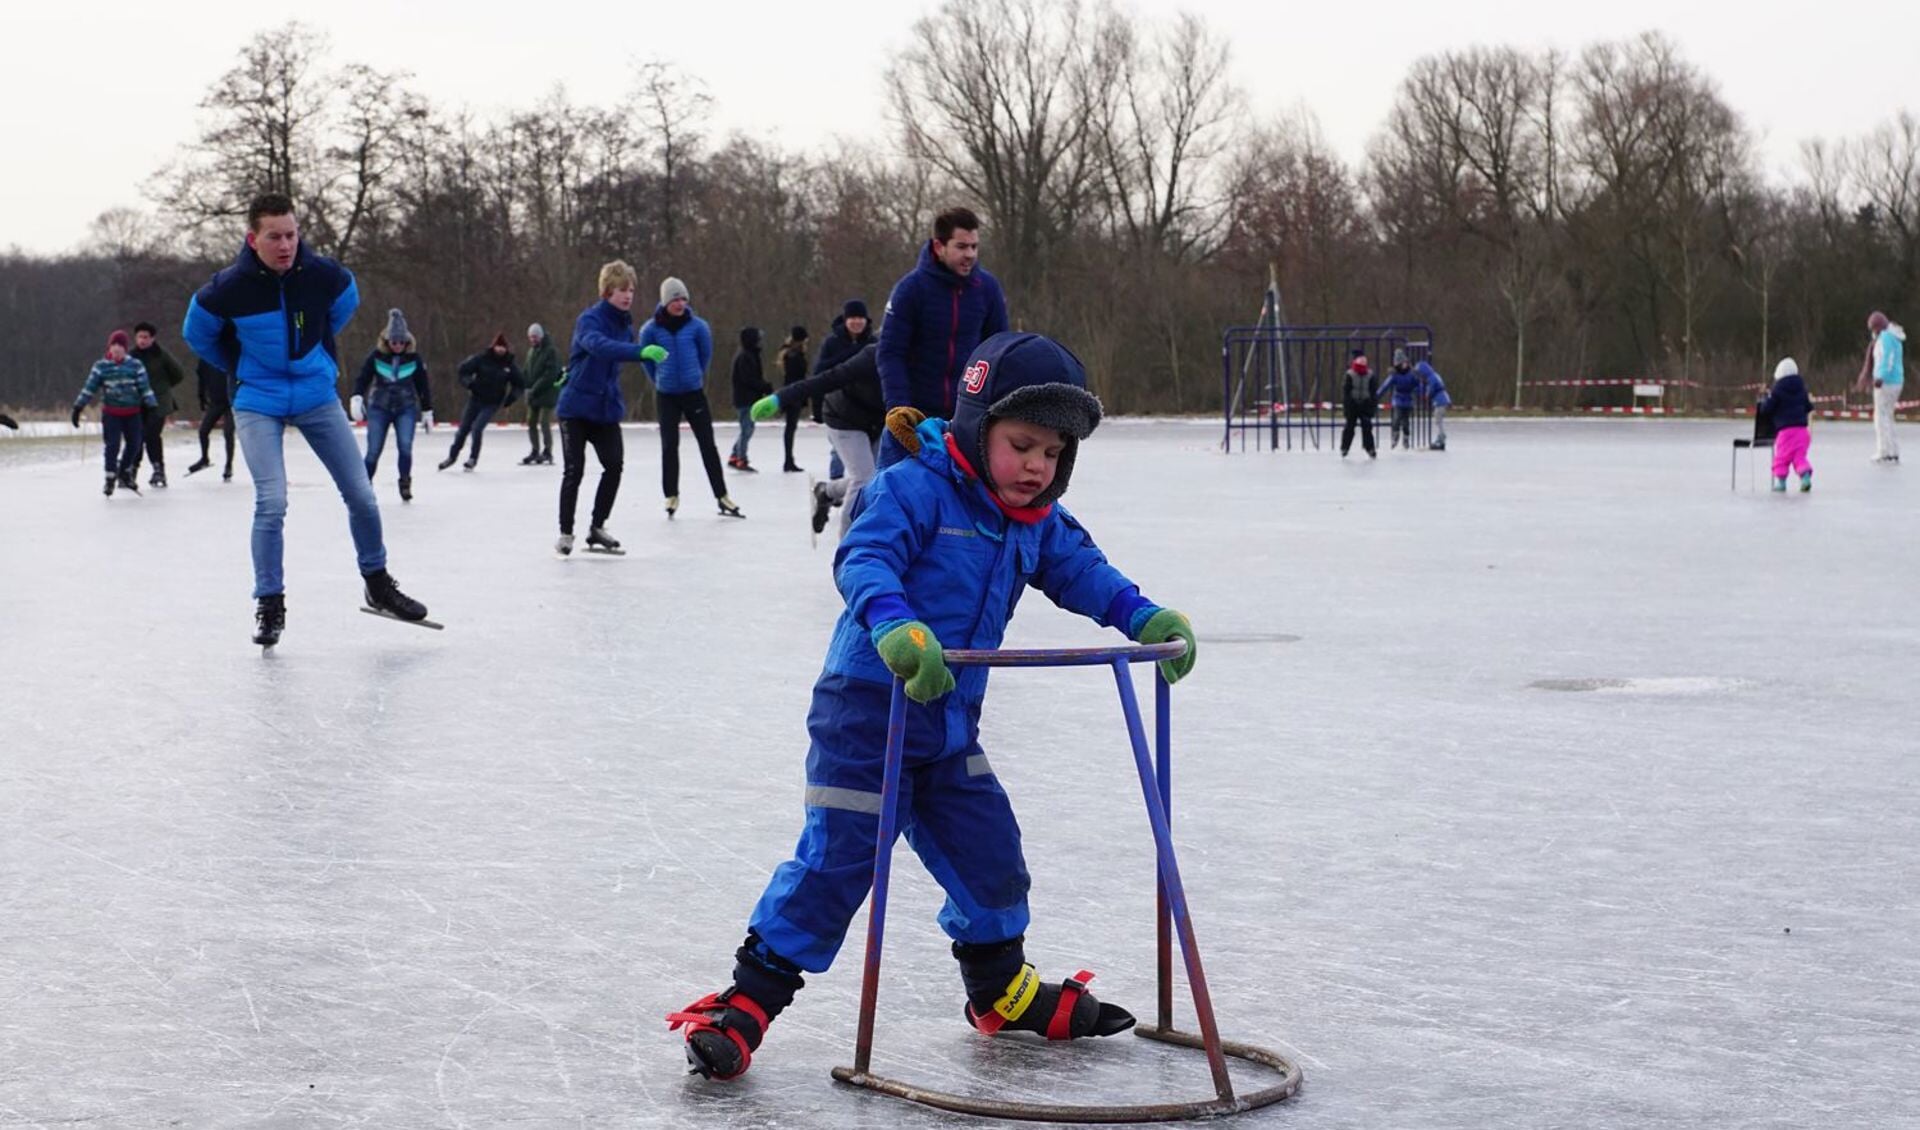 De in vorstperiodes drukbezochte schaatsbaan gaat deze winter niet open vanwege de coronamaatregelen.